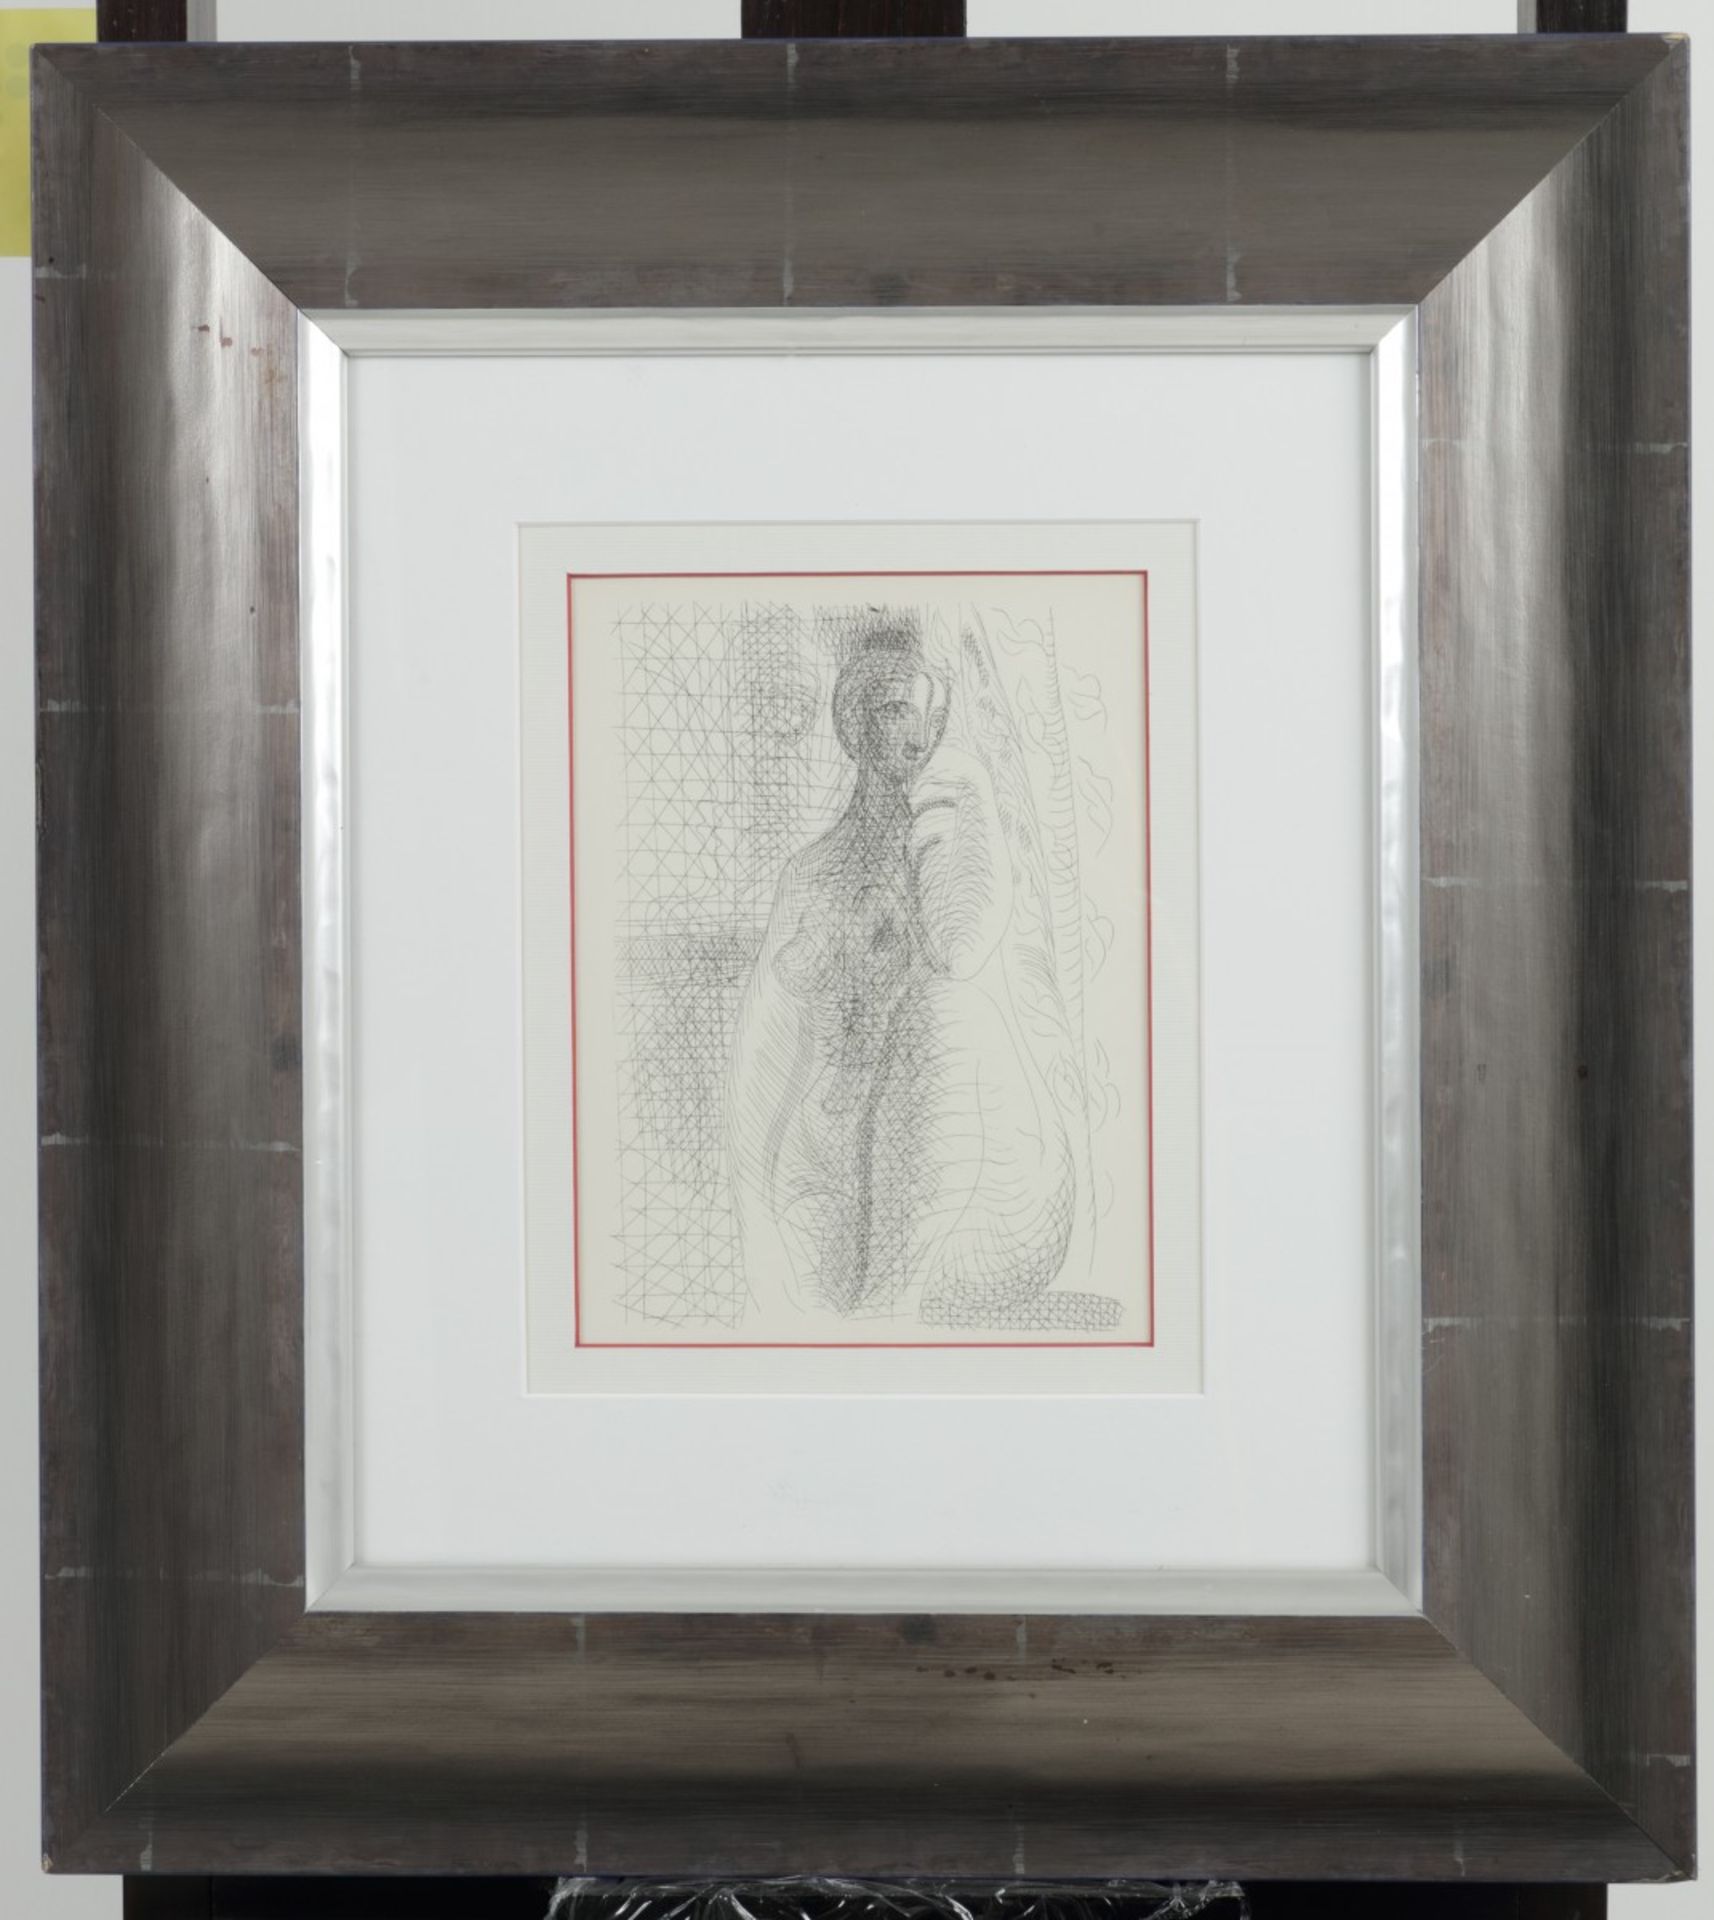 Picasso, Pablo (1881-1973) "Seated Nude", naar ets uit 1931, herkomst: 'Suite Vollard'1956, druk: Ve - Bild 2 aus 3